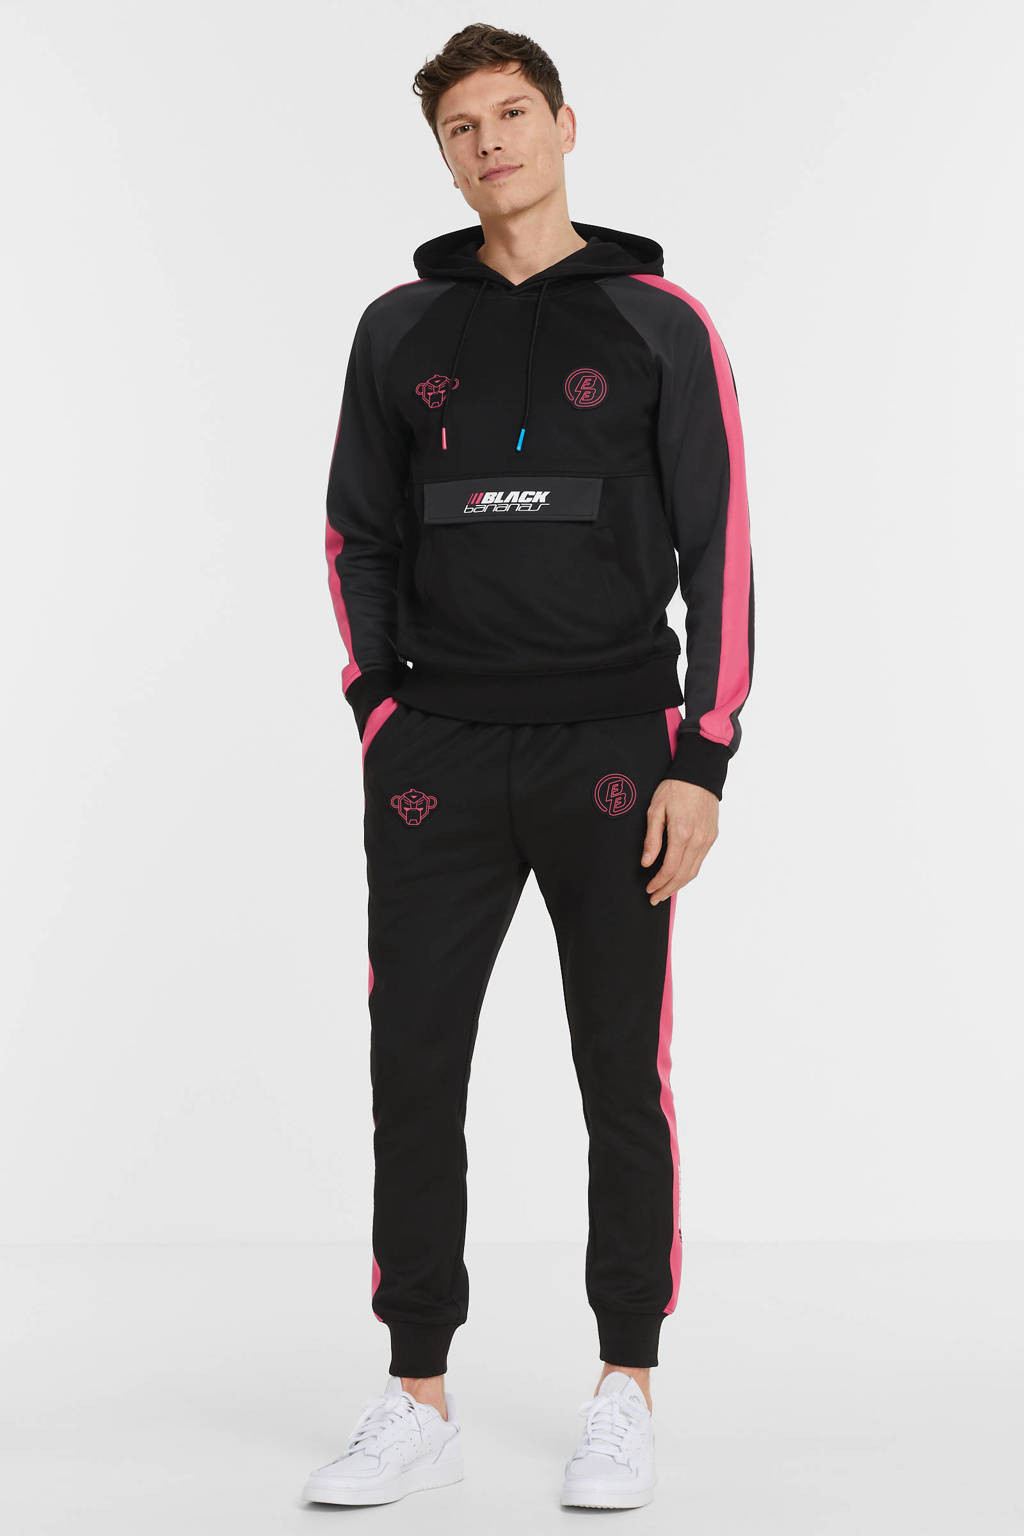 BLACK BANANAS regular fit joggingbroek Augmented met zijstreep black/hot pink, Black/Hot Pink